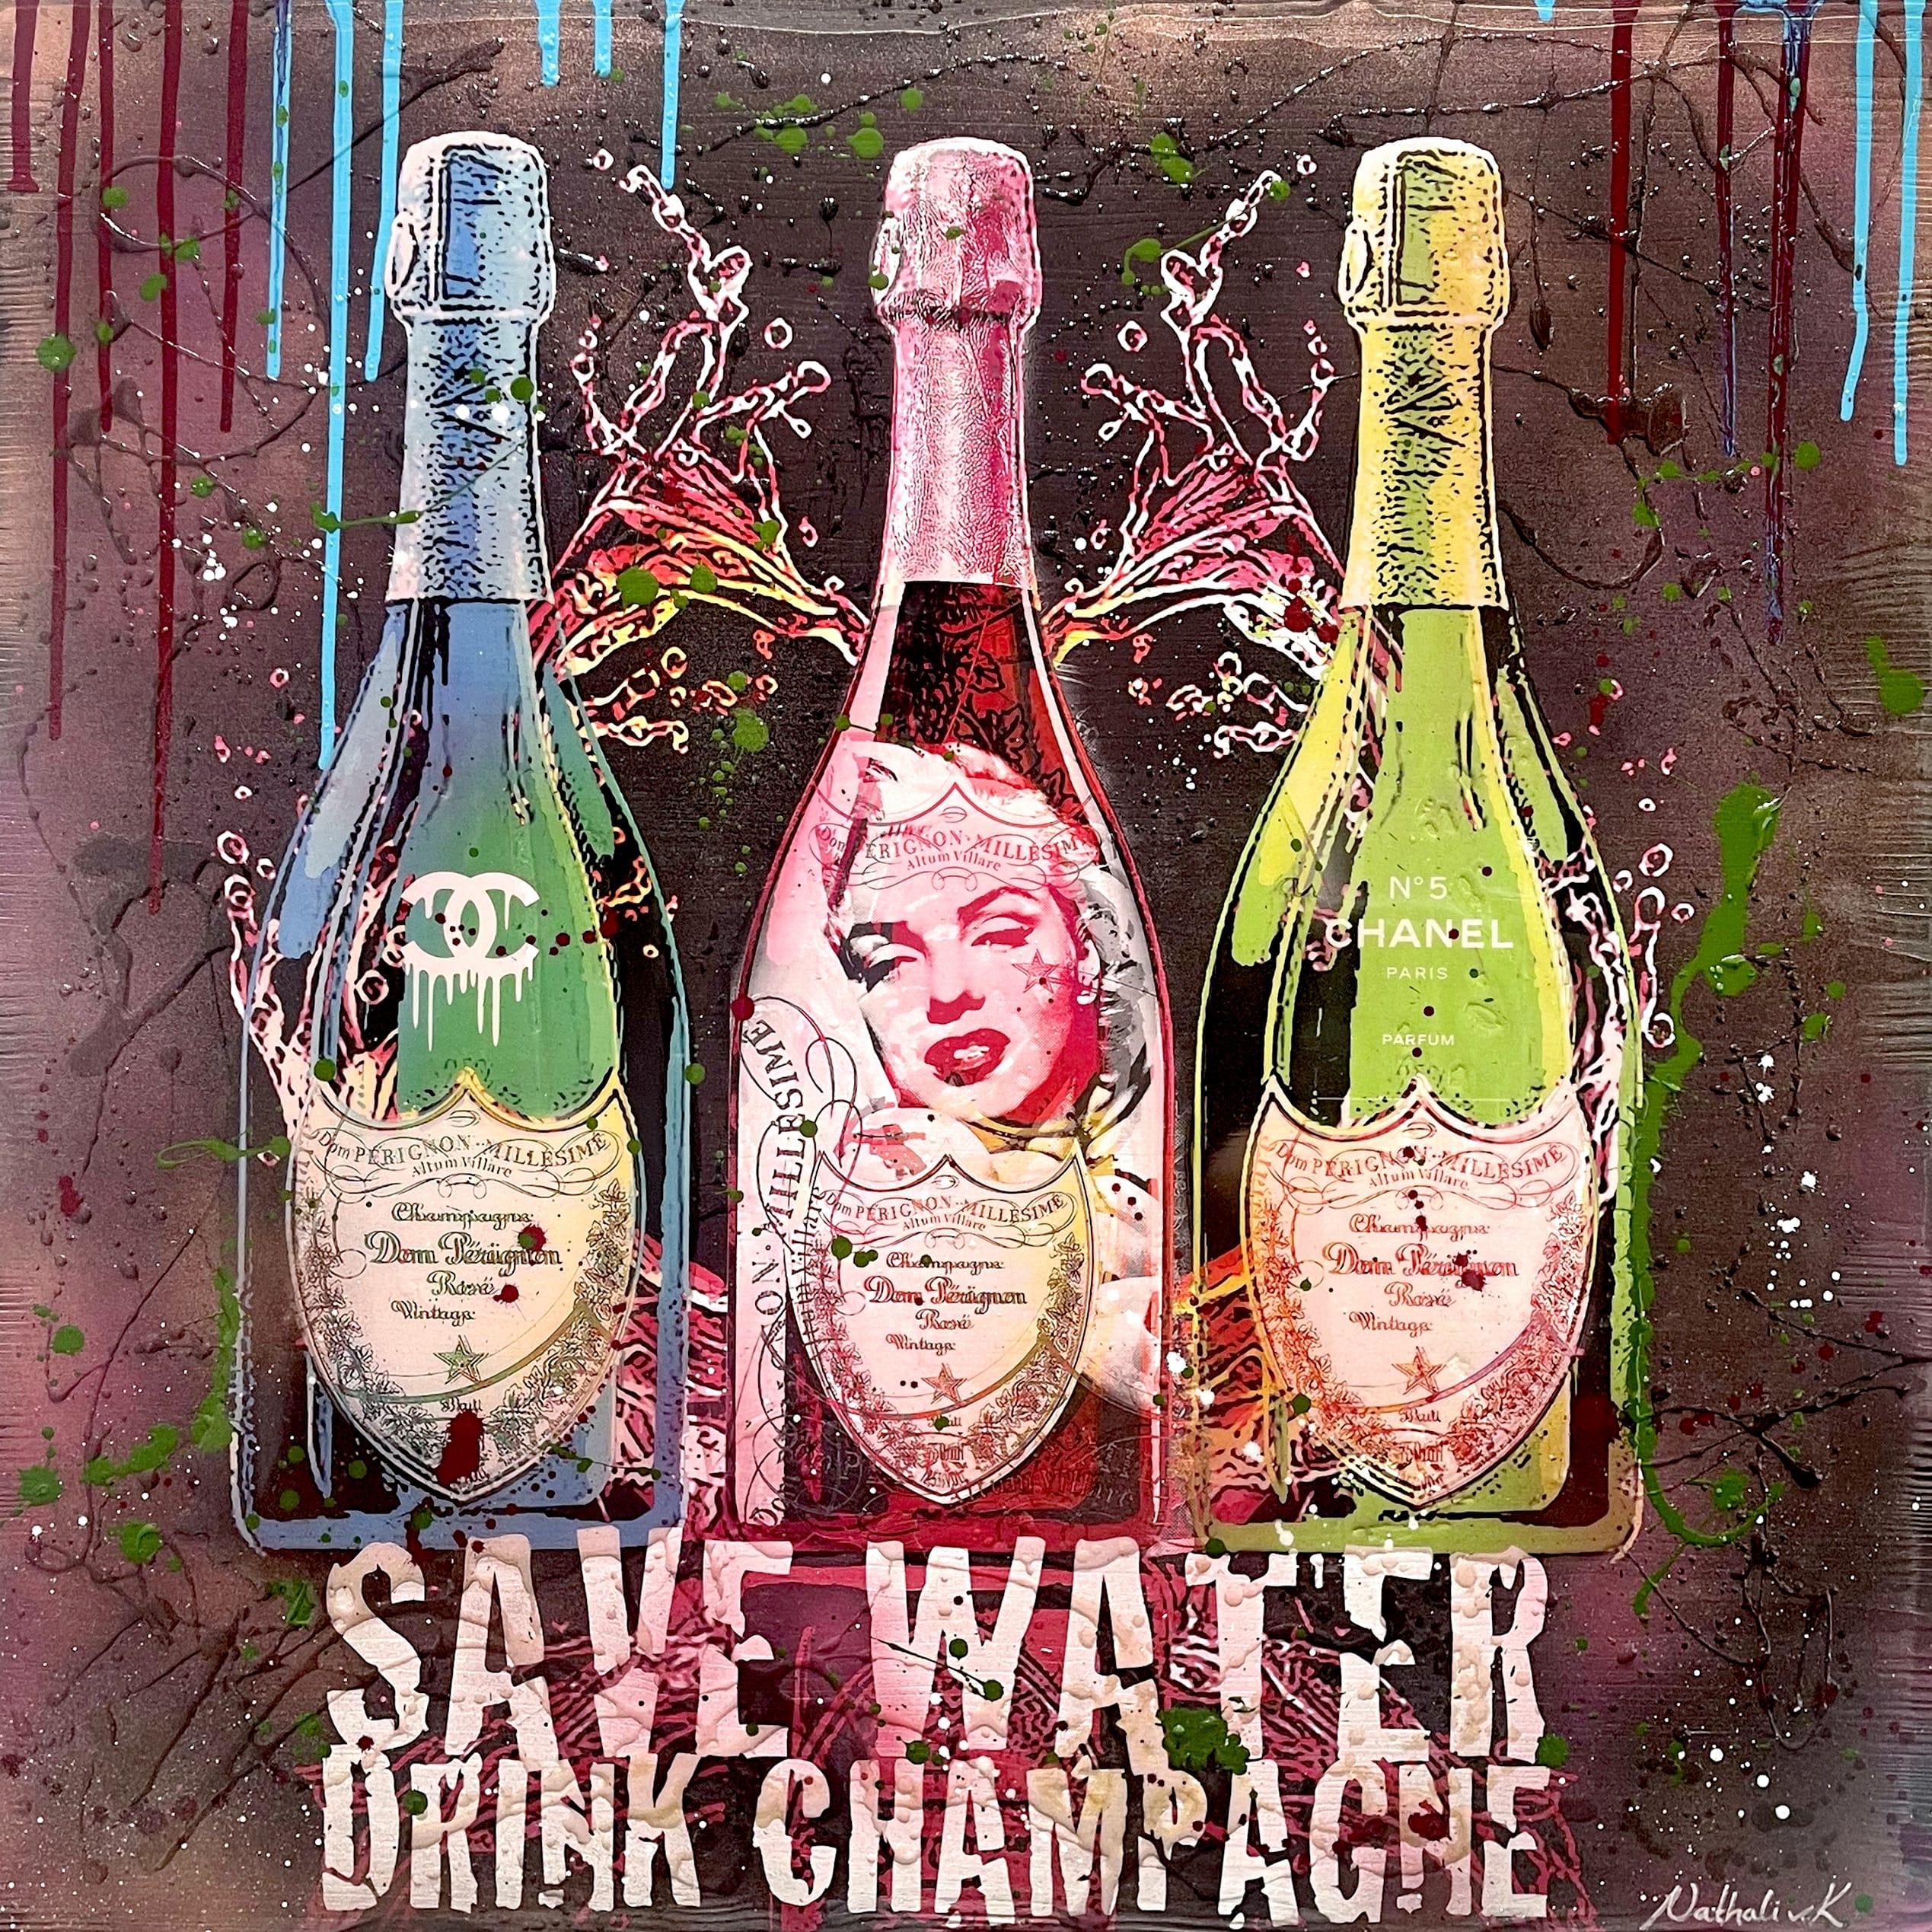 Nathali von Kretschmann Pop-Up Painting "Save Water Drink Champagne" three bottles of Dom Perignon